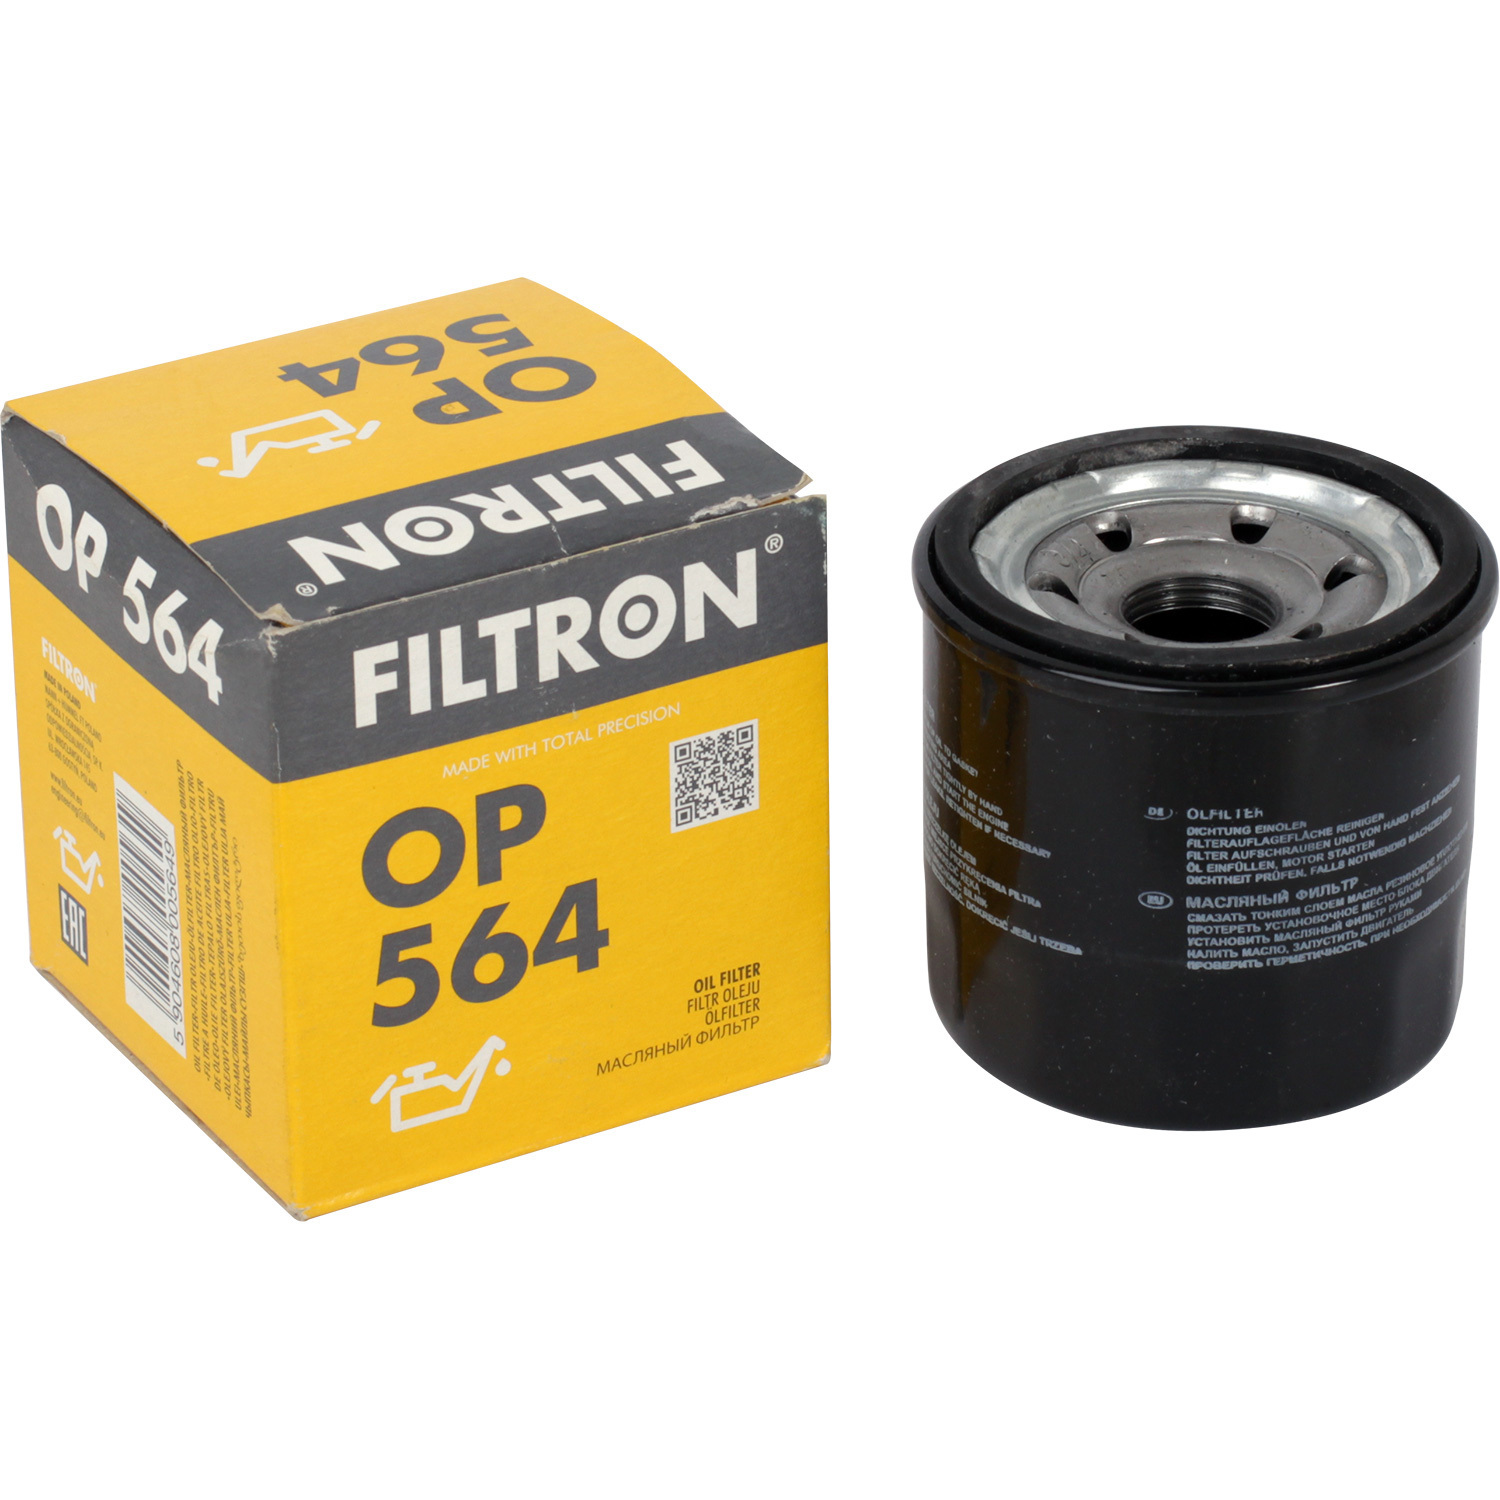 Фильтры Filtron Фильтр масляный Filtron OP564 масляный фильтр filtron op564